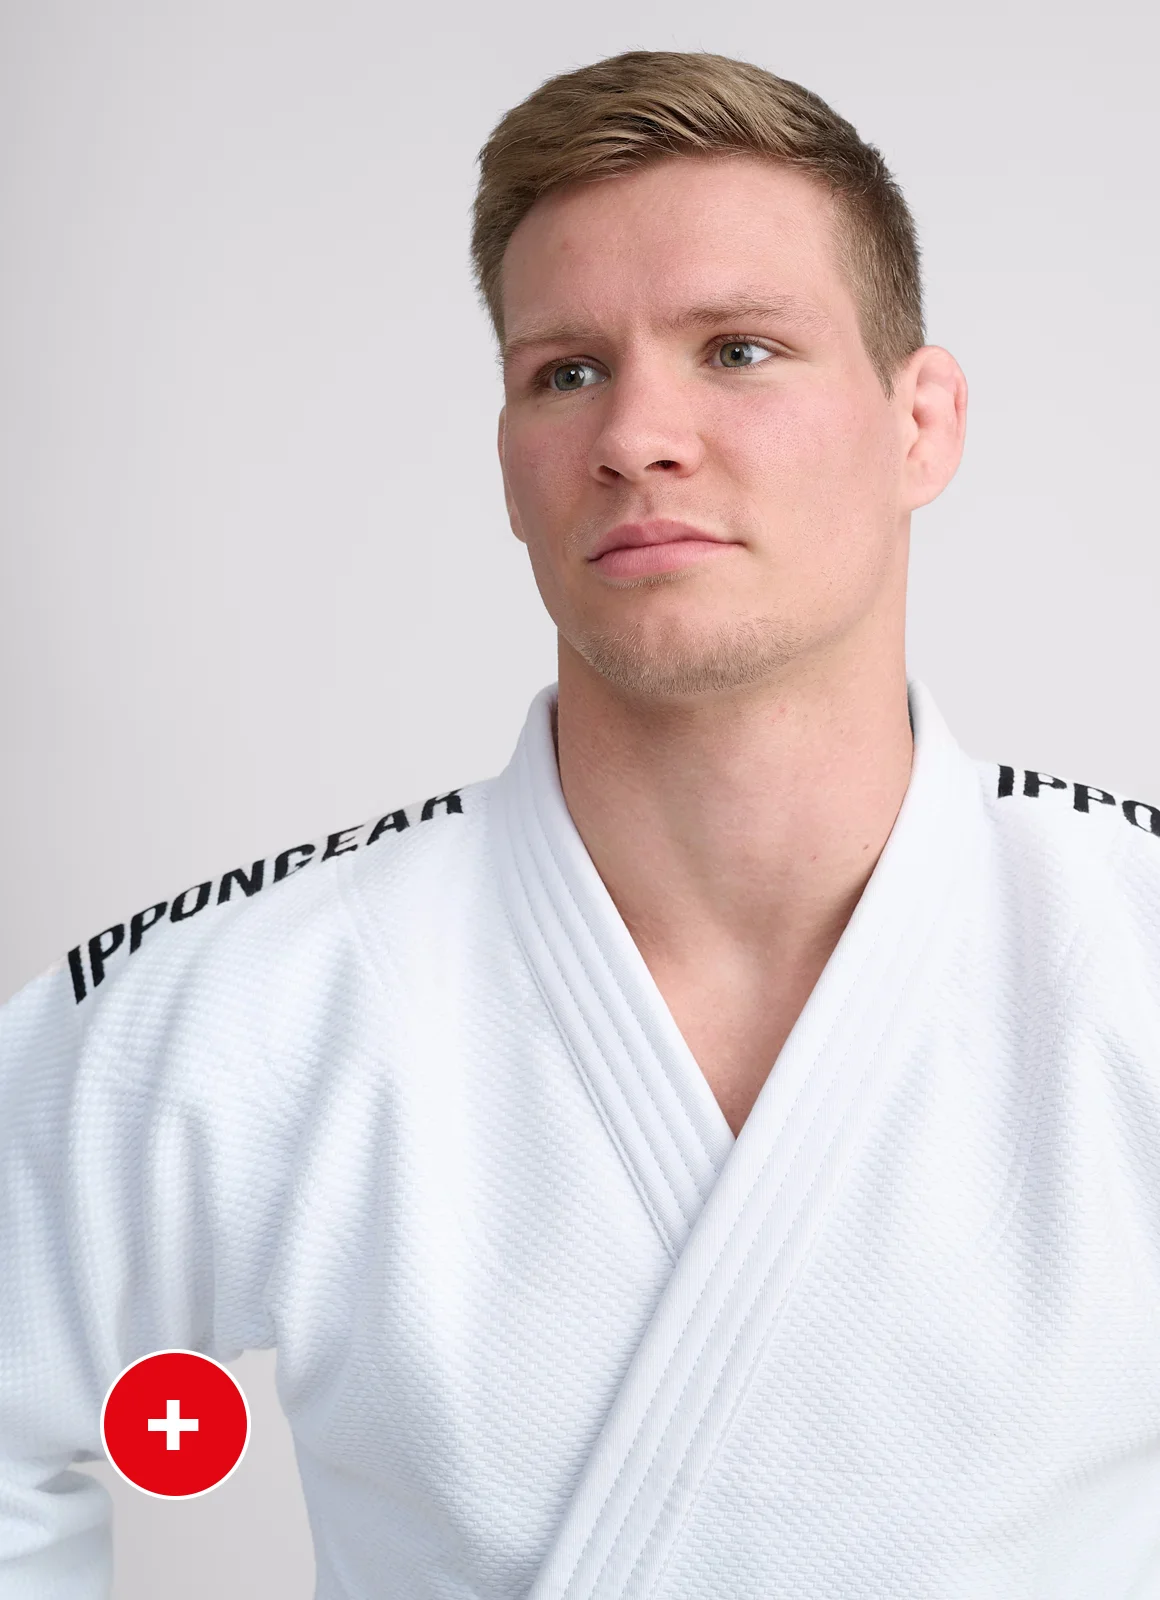 Kimono de judo - Judogis para entrenamiento - AngryFighters S.L.